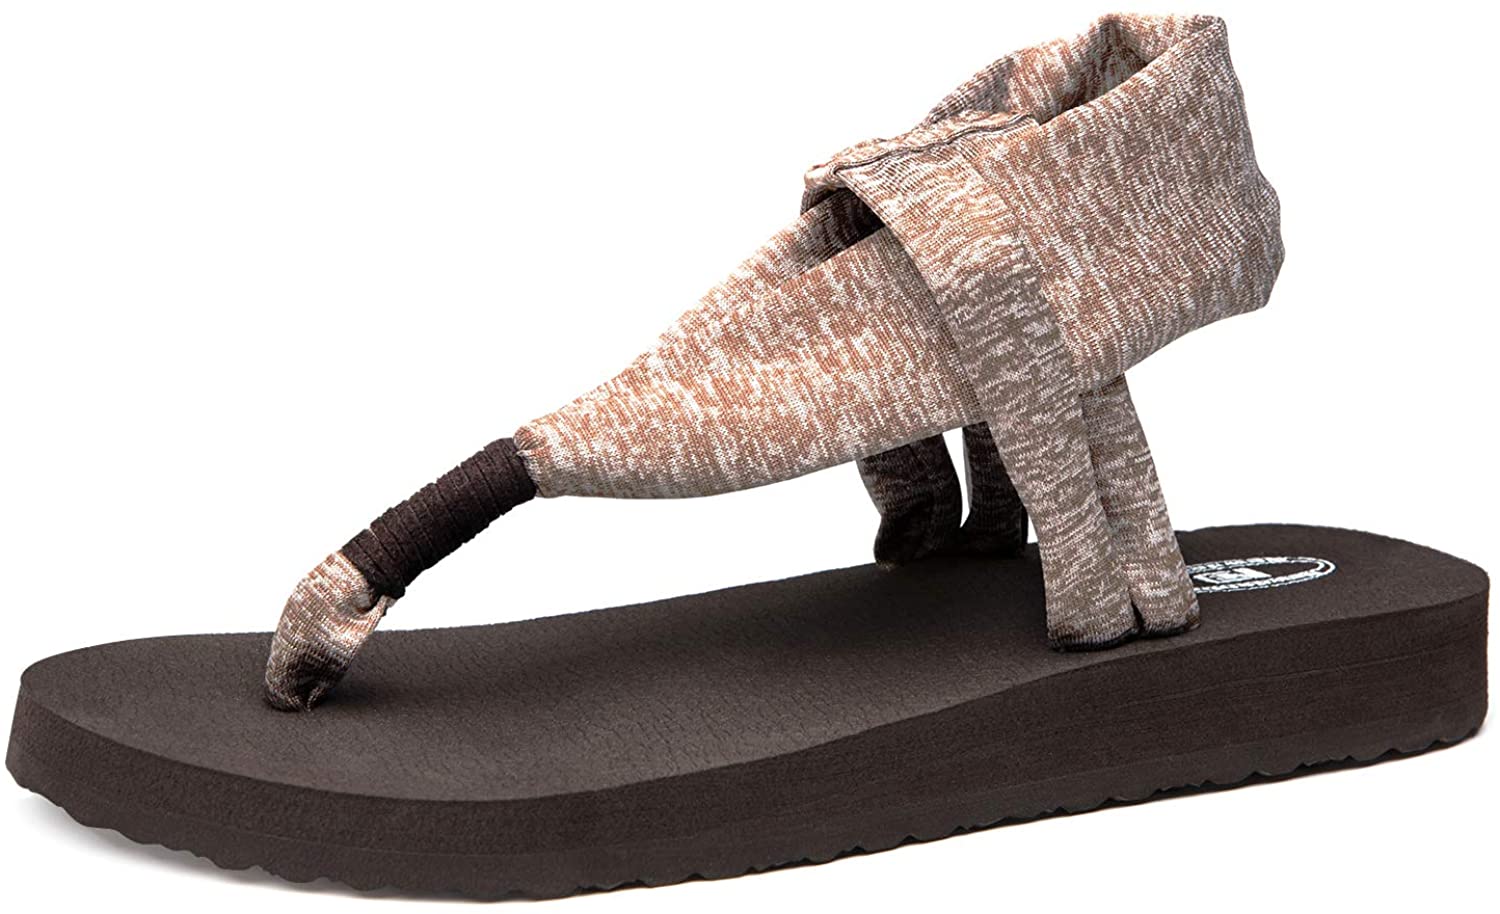 Ranberone Womens Yoga Mat Flip Flops Casual Flat Summer Beach Sandals 